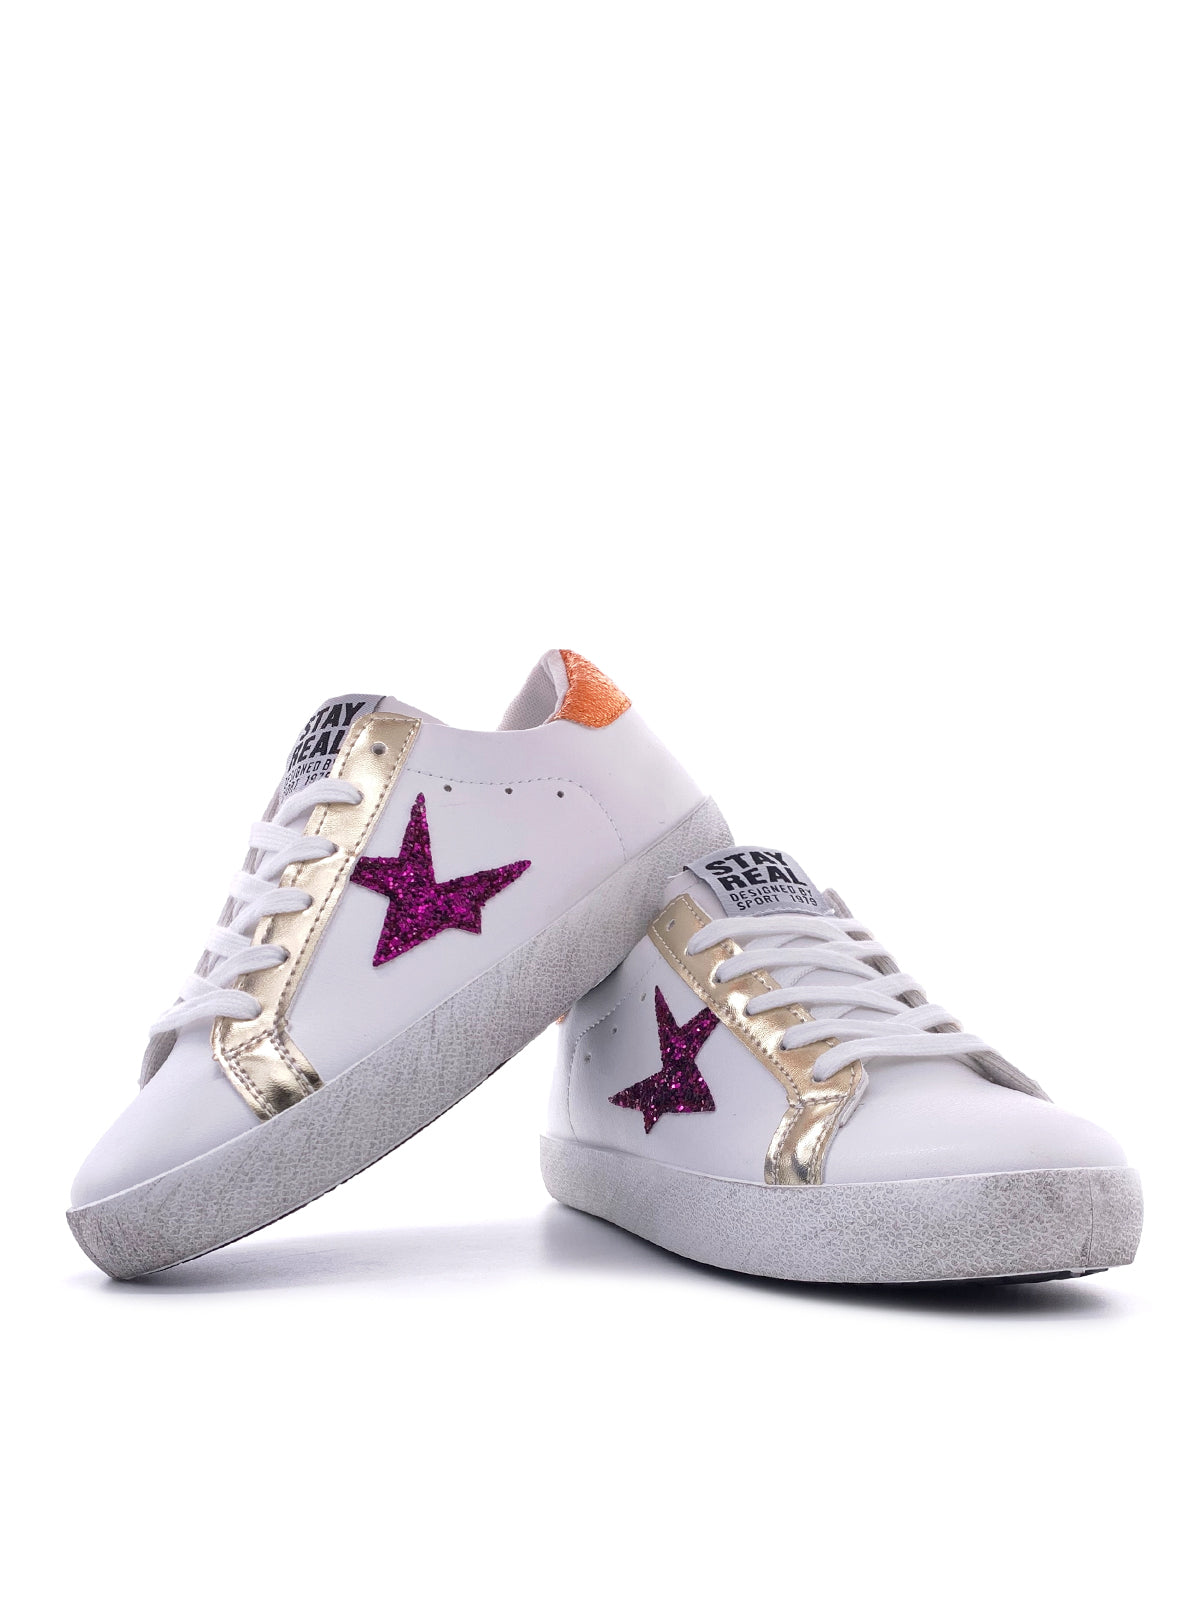 GIGI-Sneakers in ecopelle con stampa stella